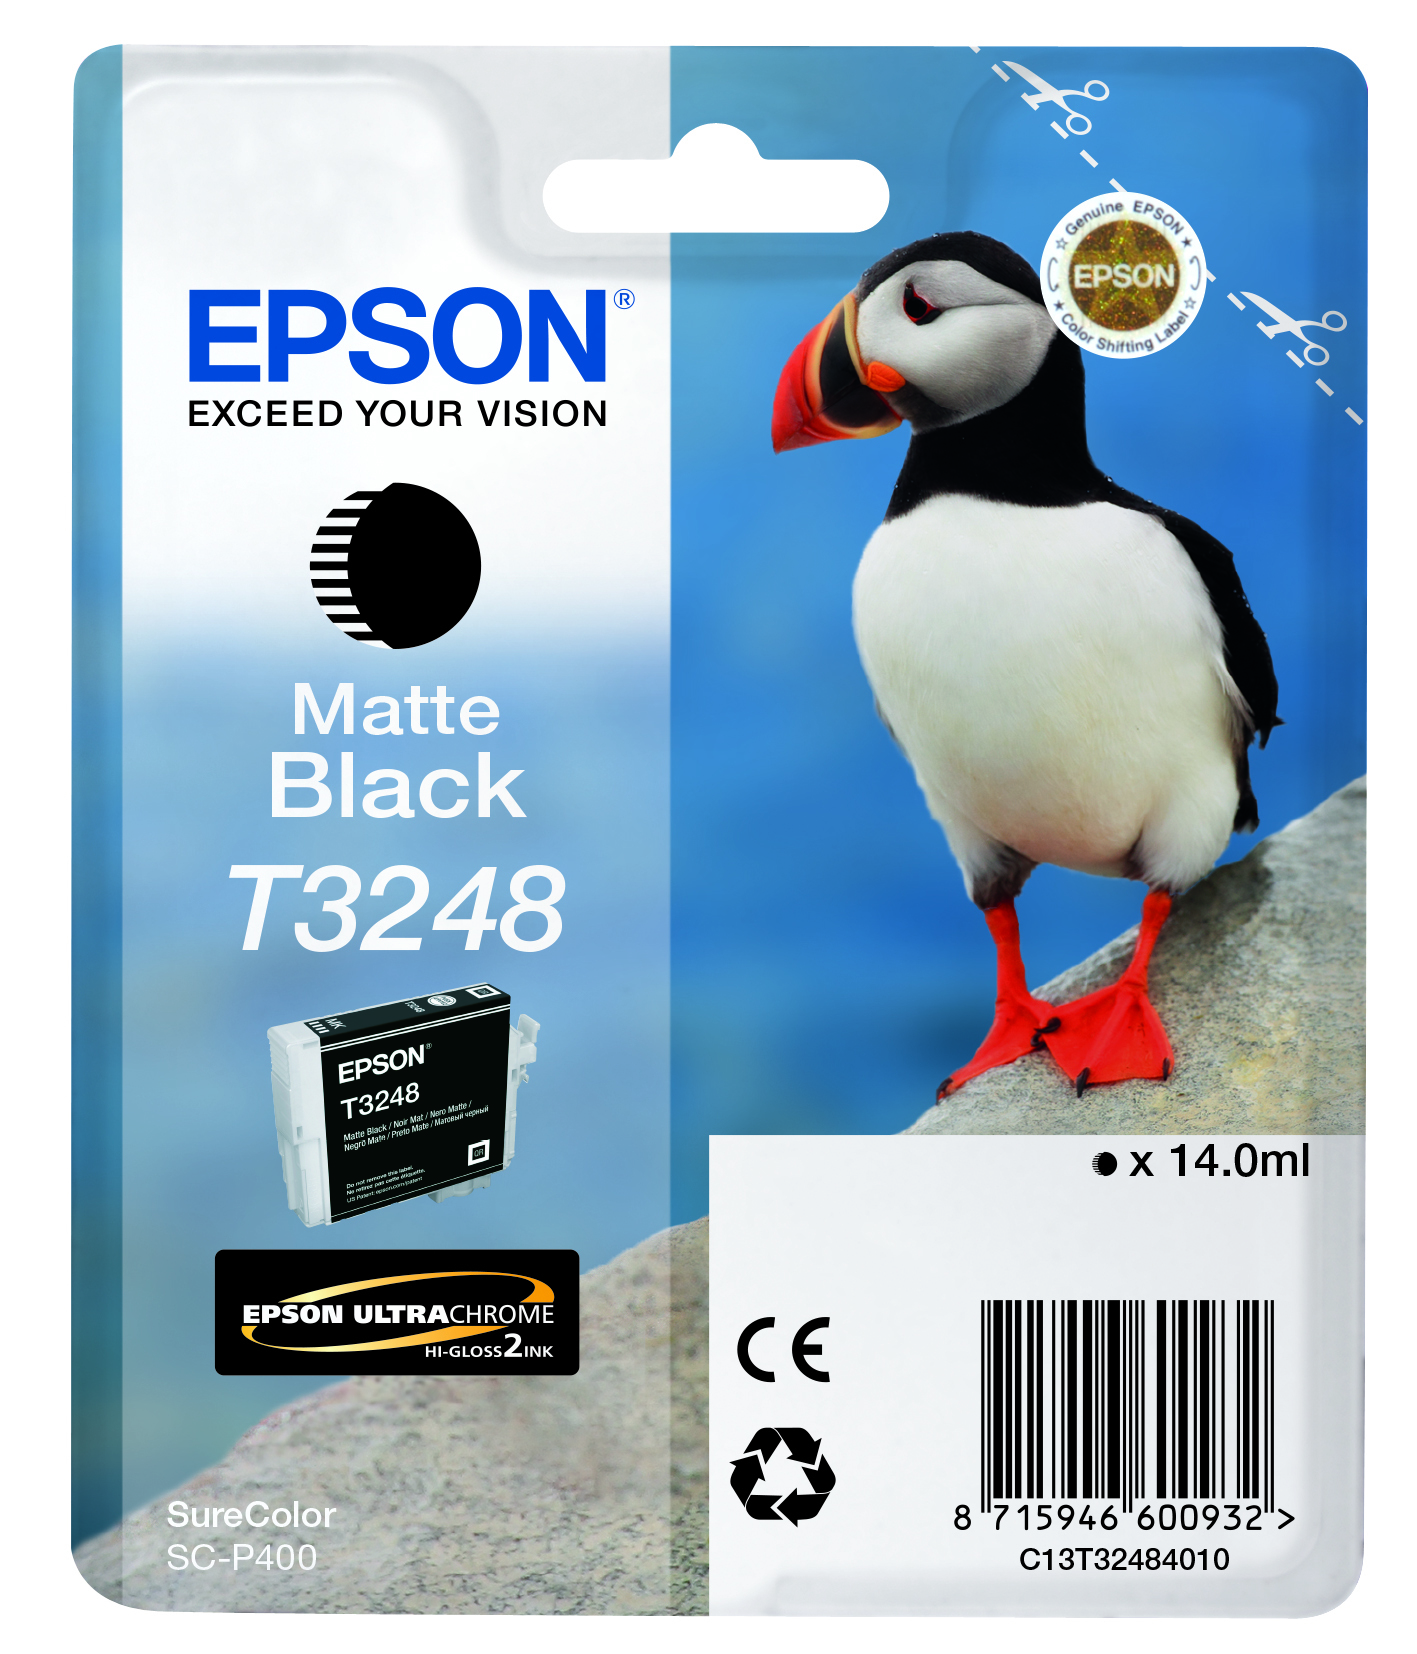 Epson T3248 Matte Black single pack / zwart